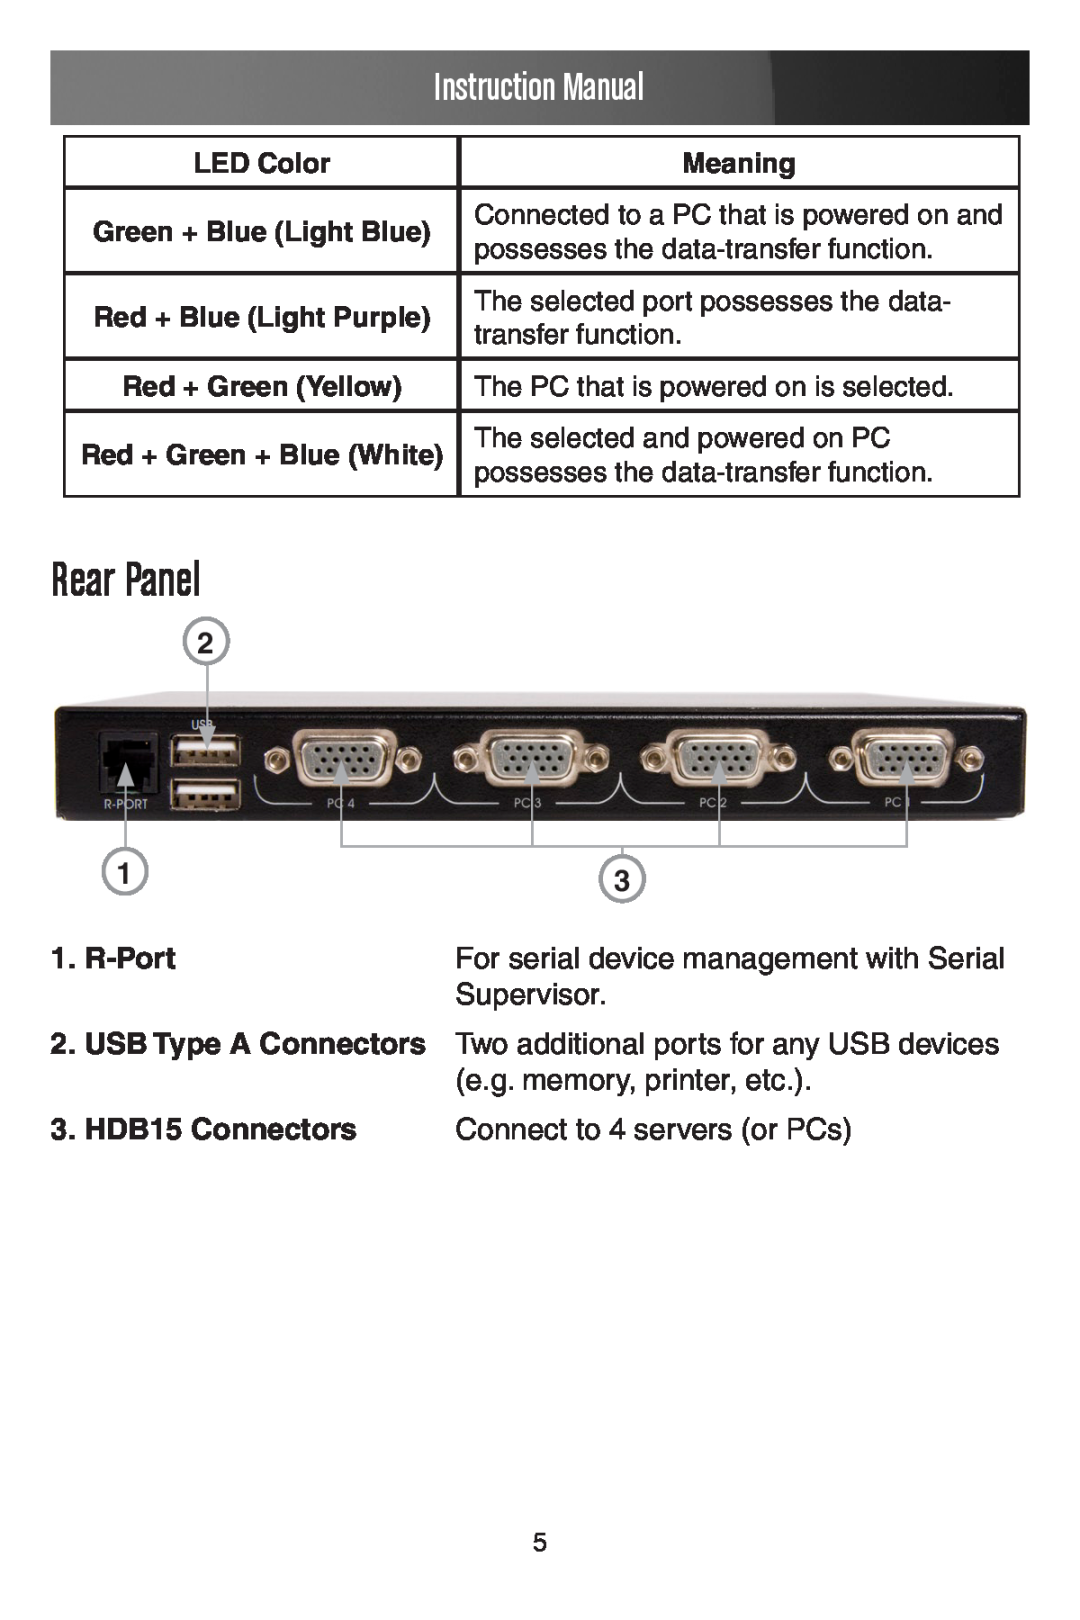 StarTech.com SV441DUSBI Rear Panel, R-Port, Instruction Manual, LED Color, Meaning, Green + Blue Light Blue 